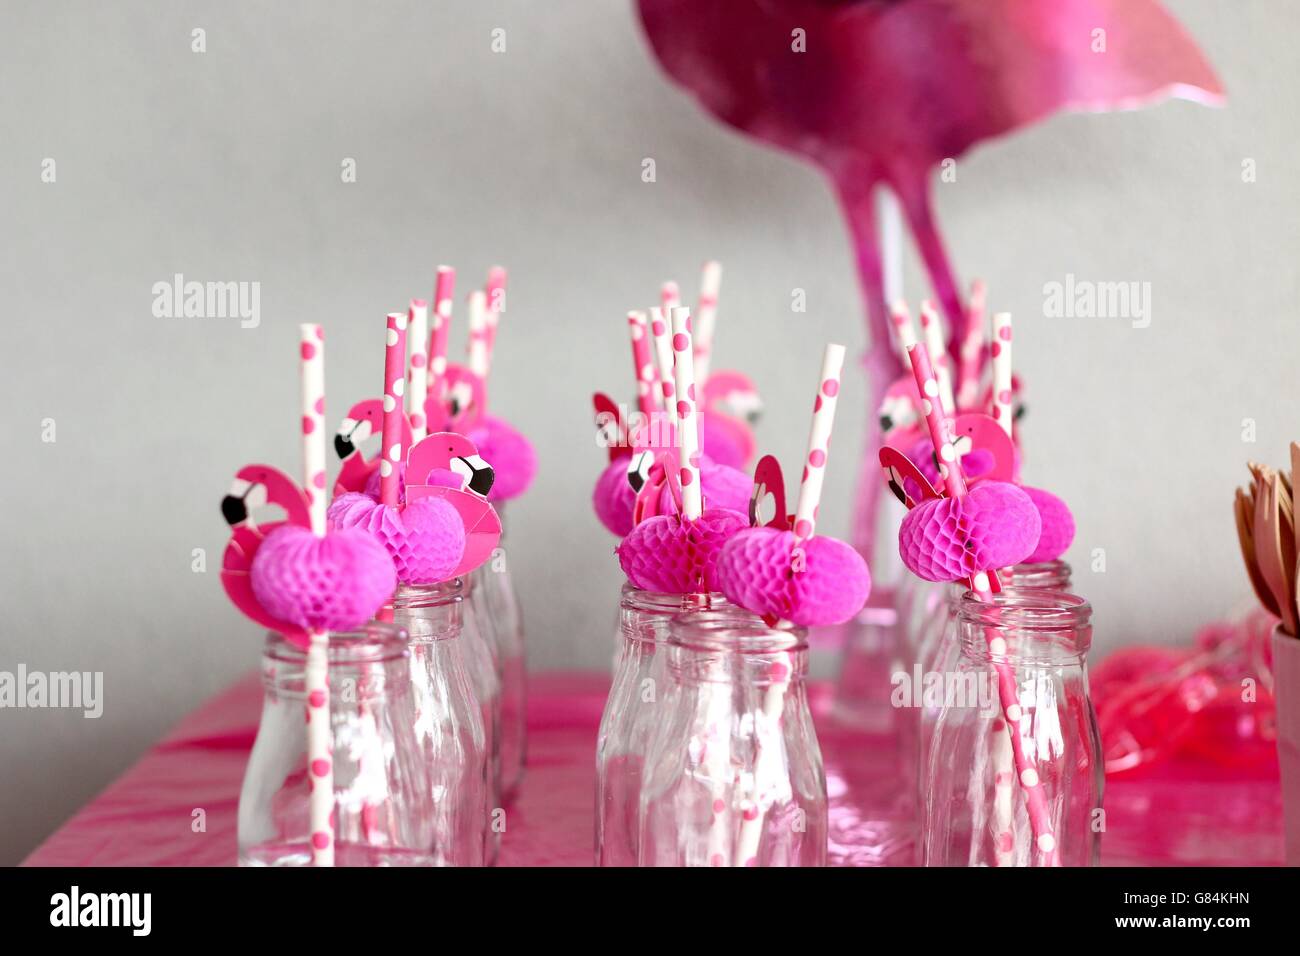 Flamant rose paille dans des bouteilles en verre dans une rangée Banque D'Images